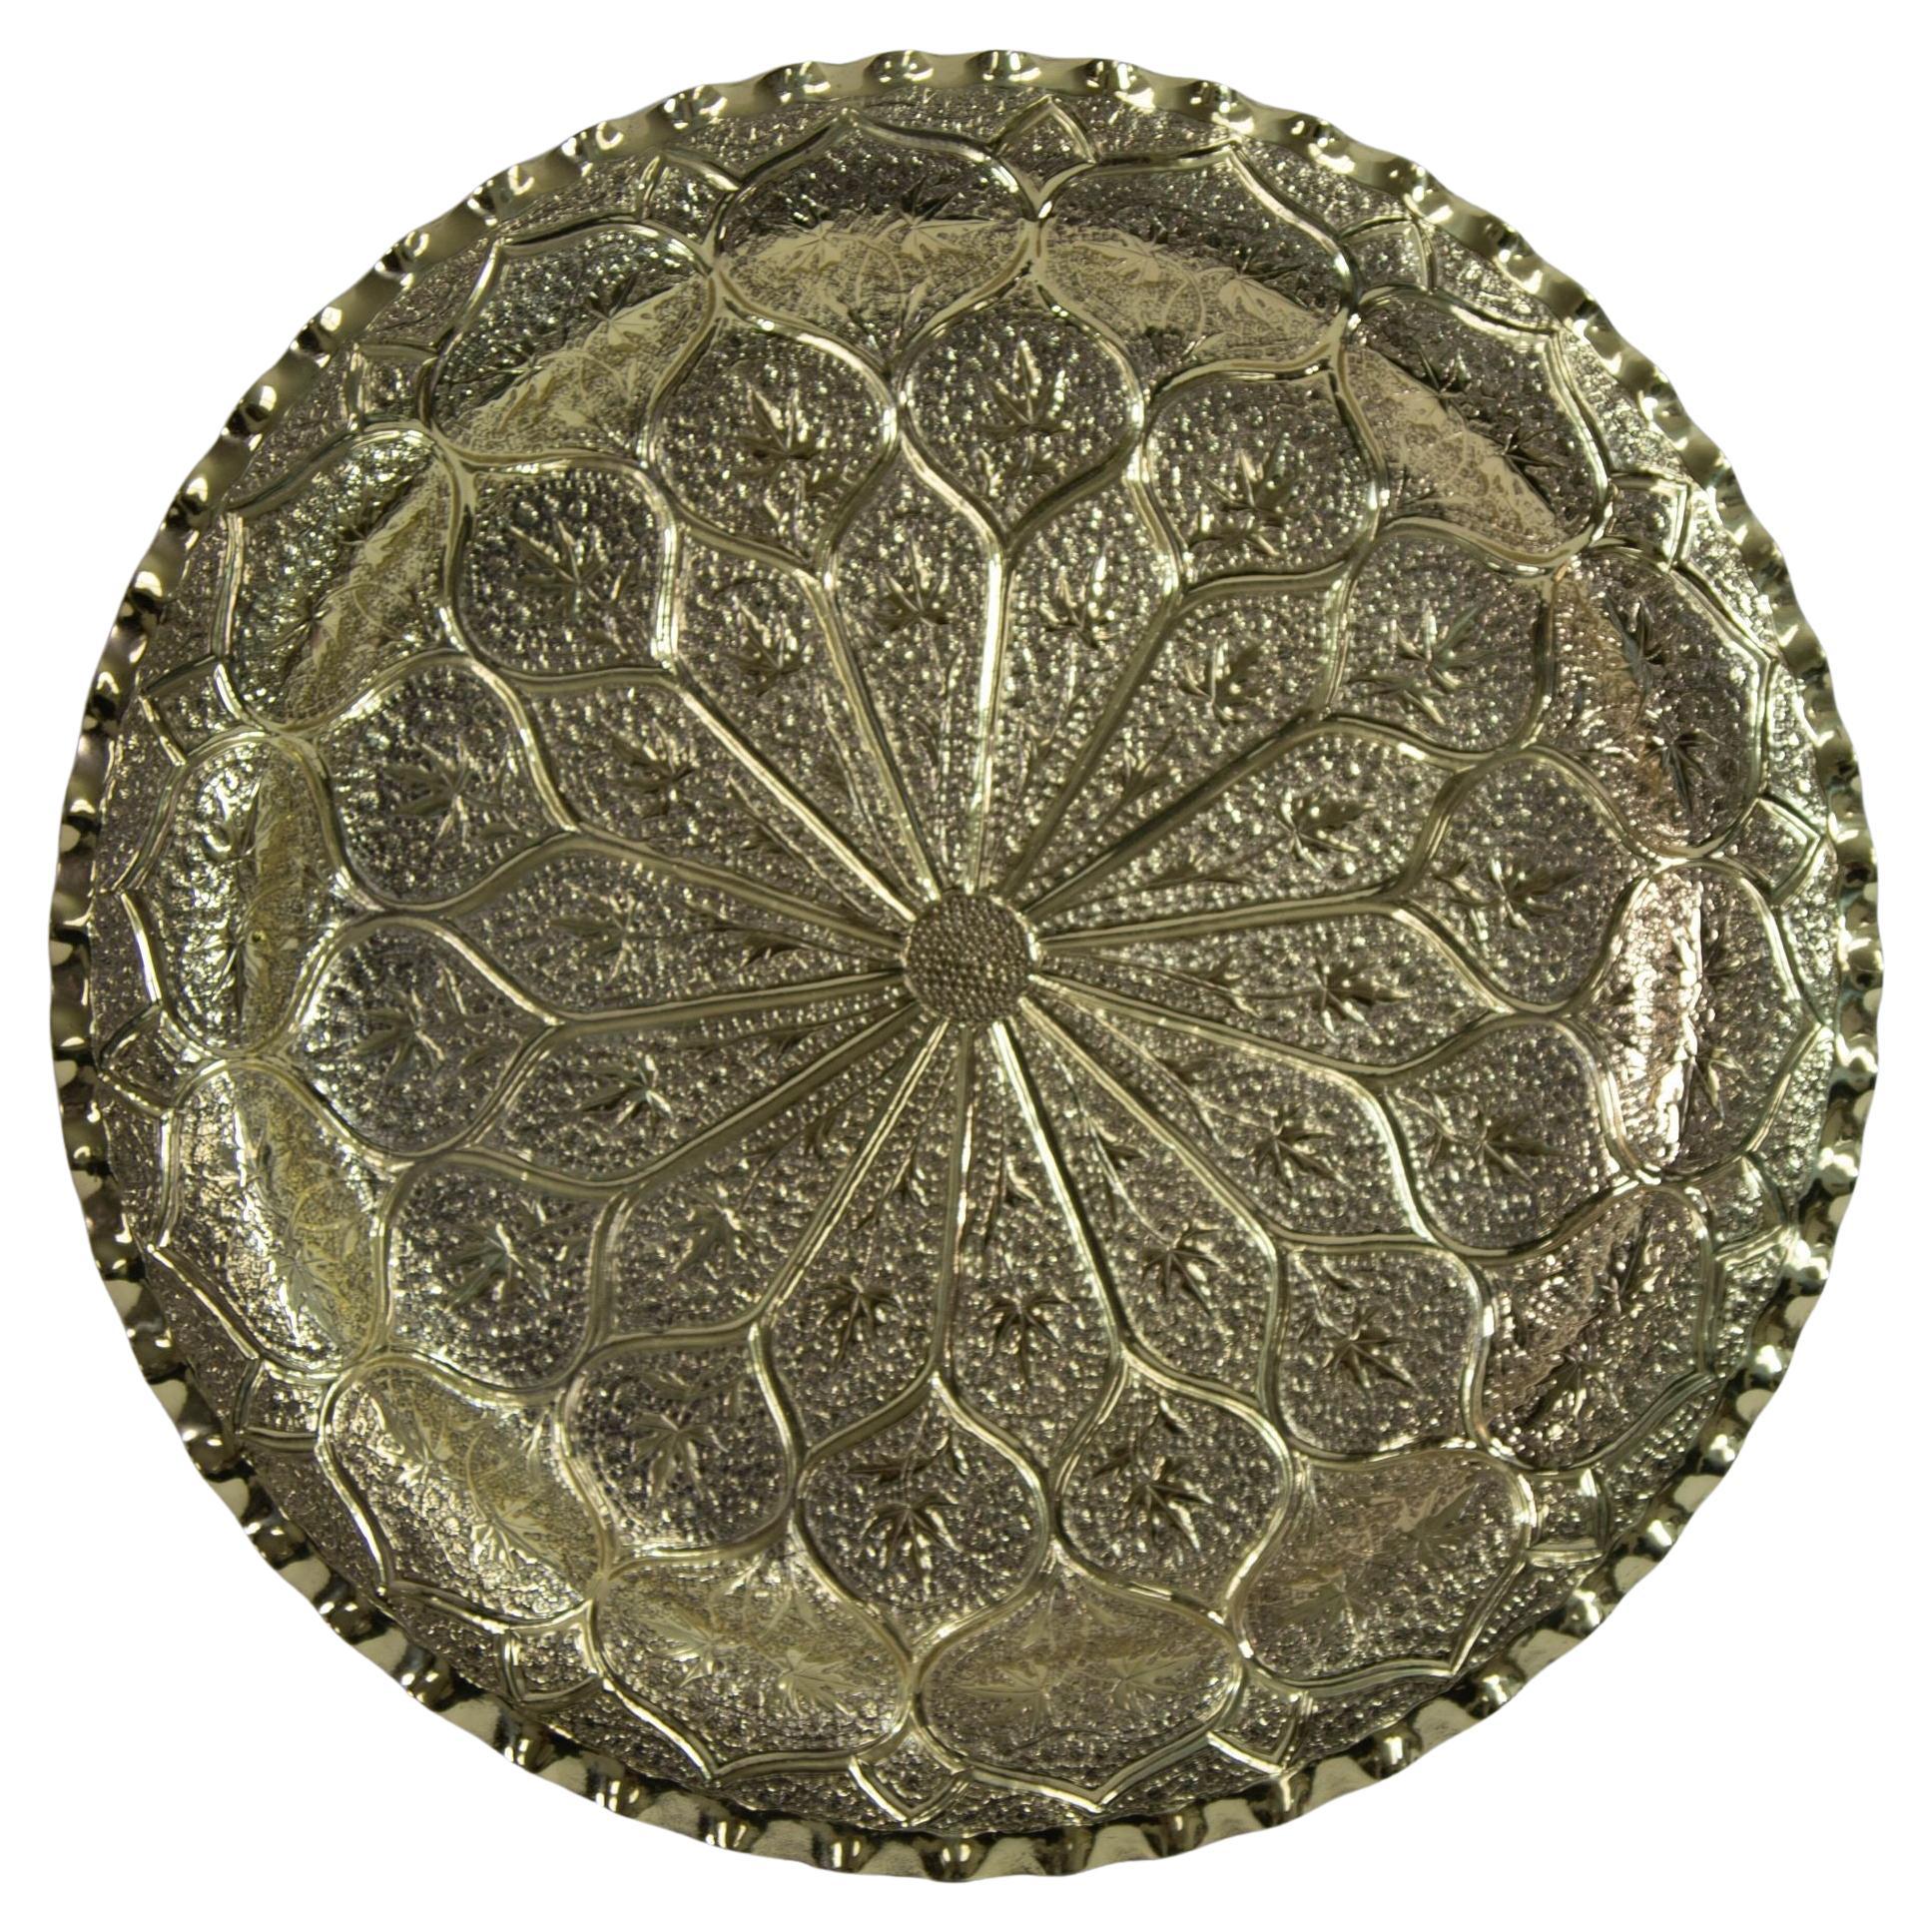 Marokkanisches Messingtablett, maurische islamische Metallarbeit, 13 Zoll Durchmesser